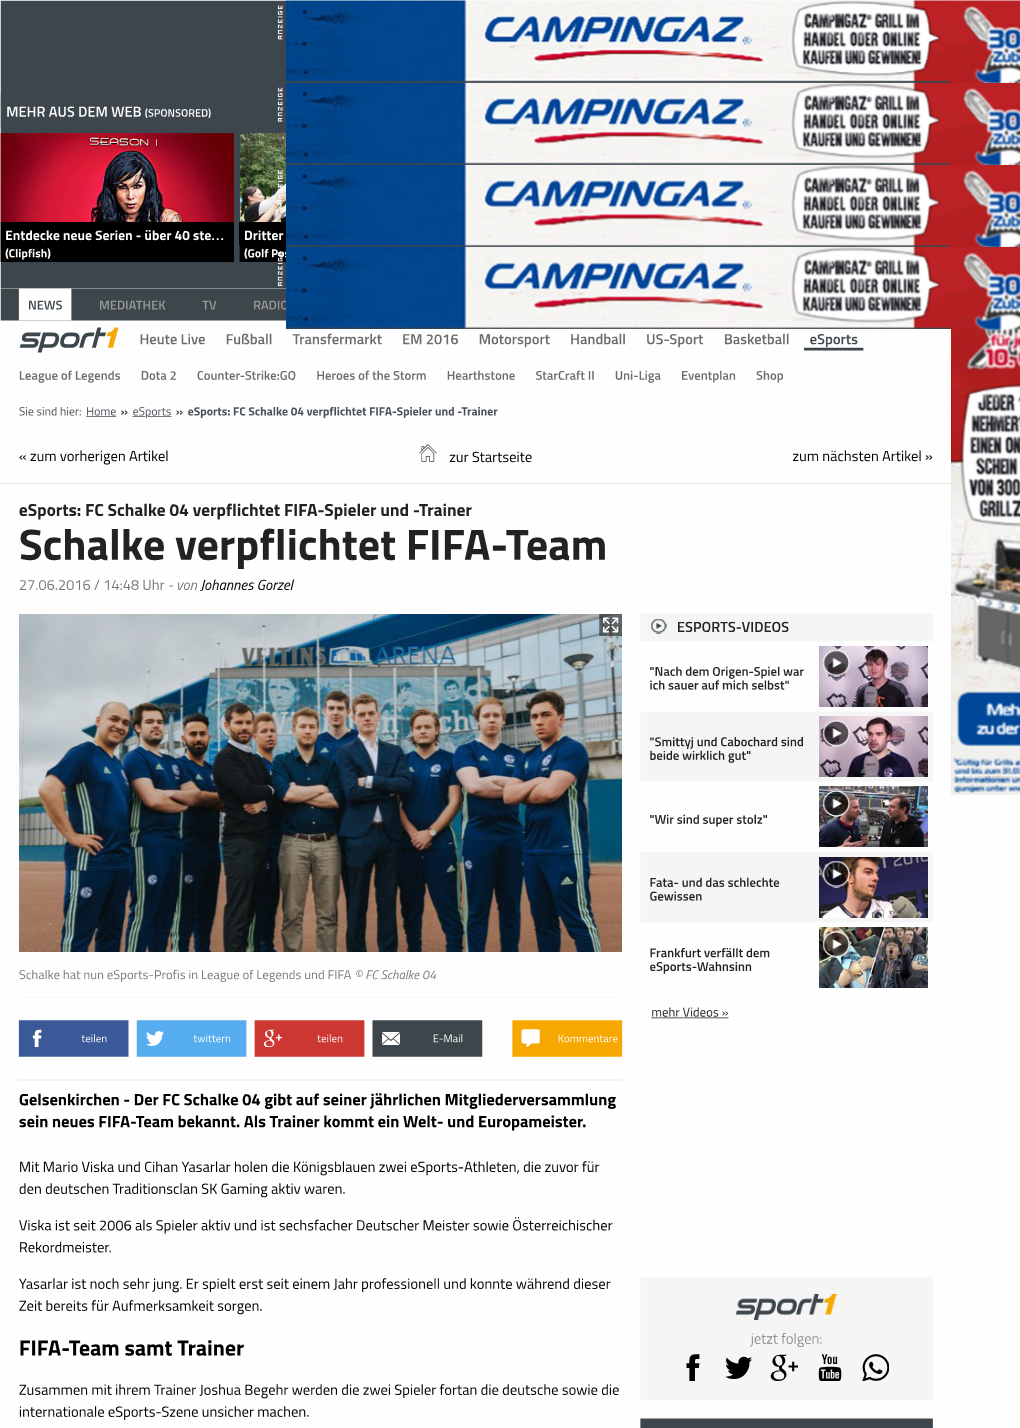 Esports- FC Schalke 04 Verpflichtet FIFA-Spieler